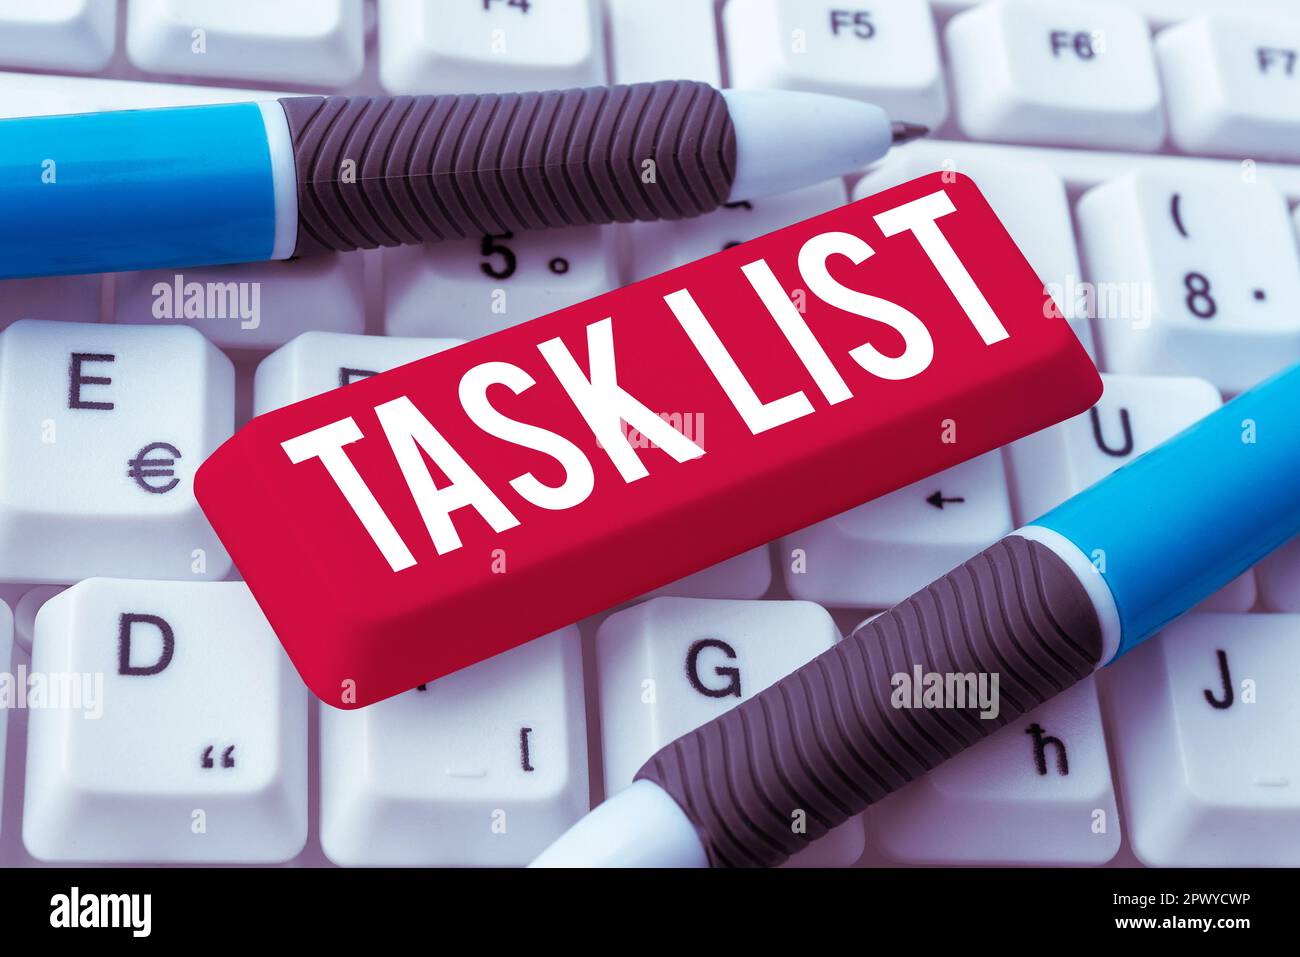 Affiche affichant la liste des tâches, mot écrit sur le groupe de rappel de planification des activités à effectuer Banque D'Images